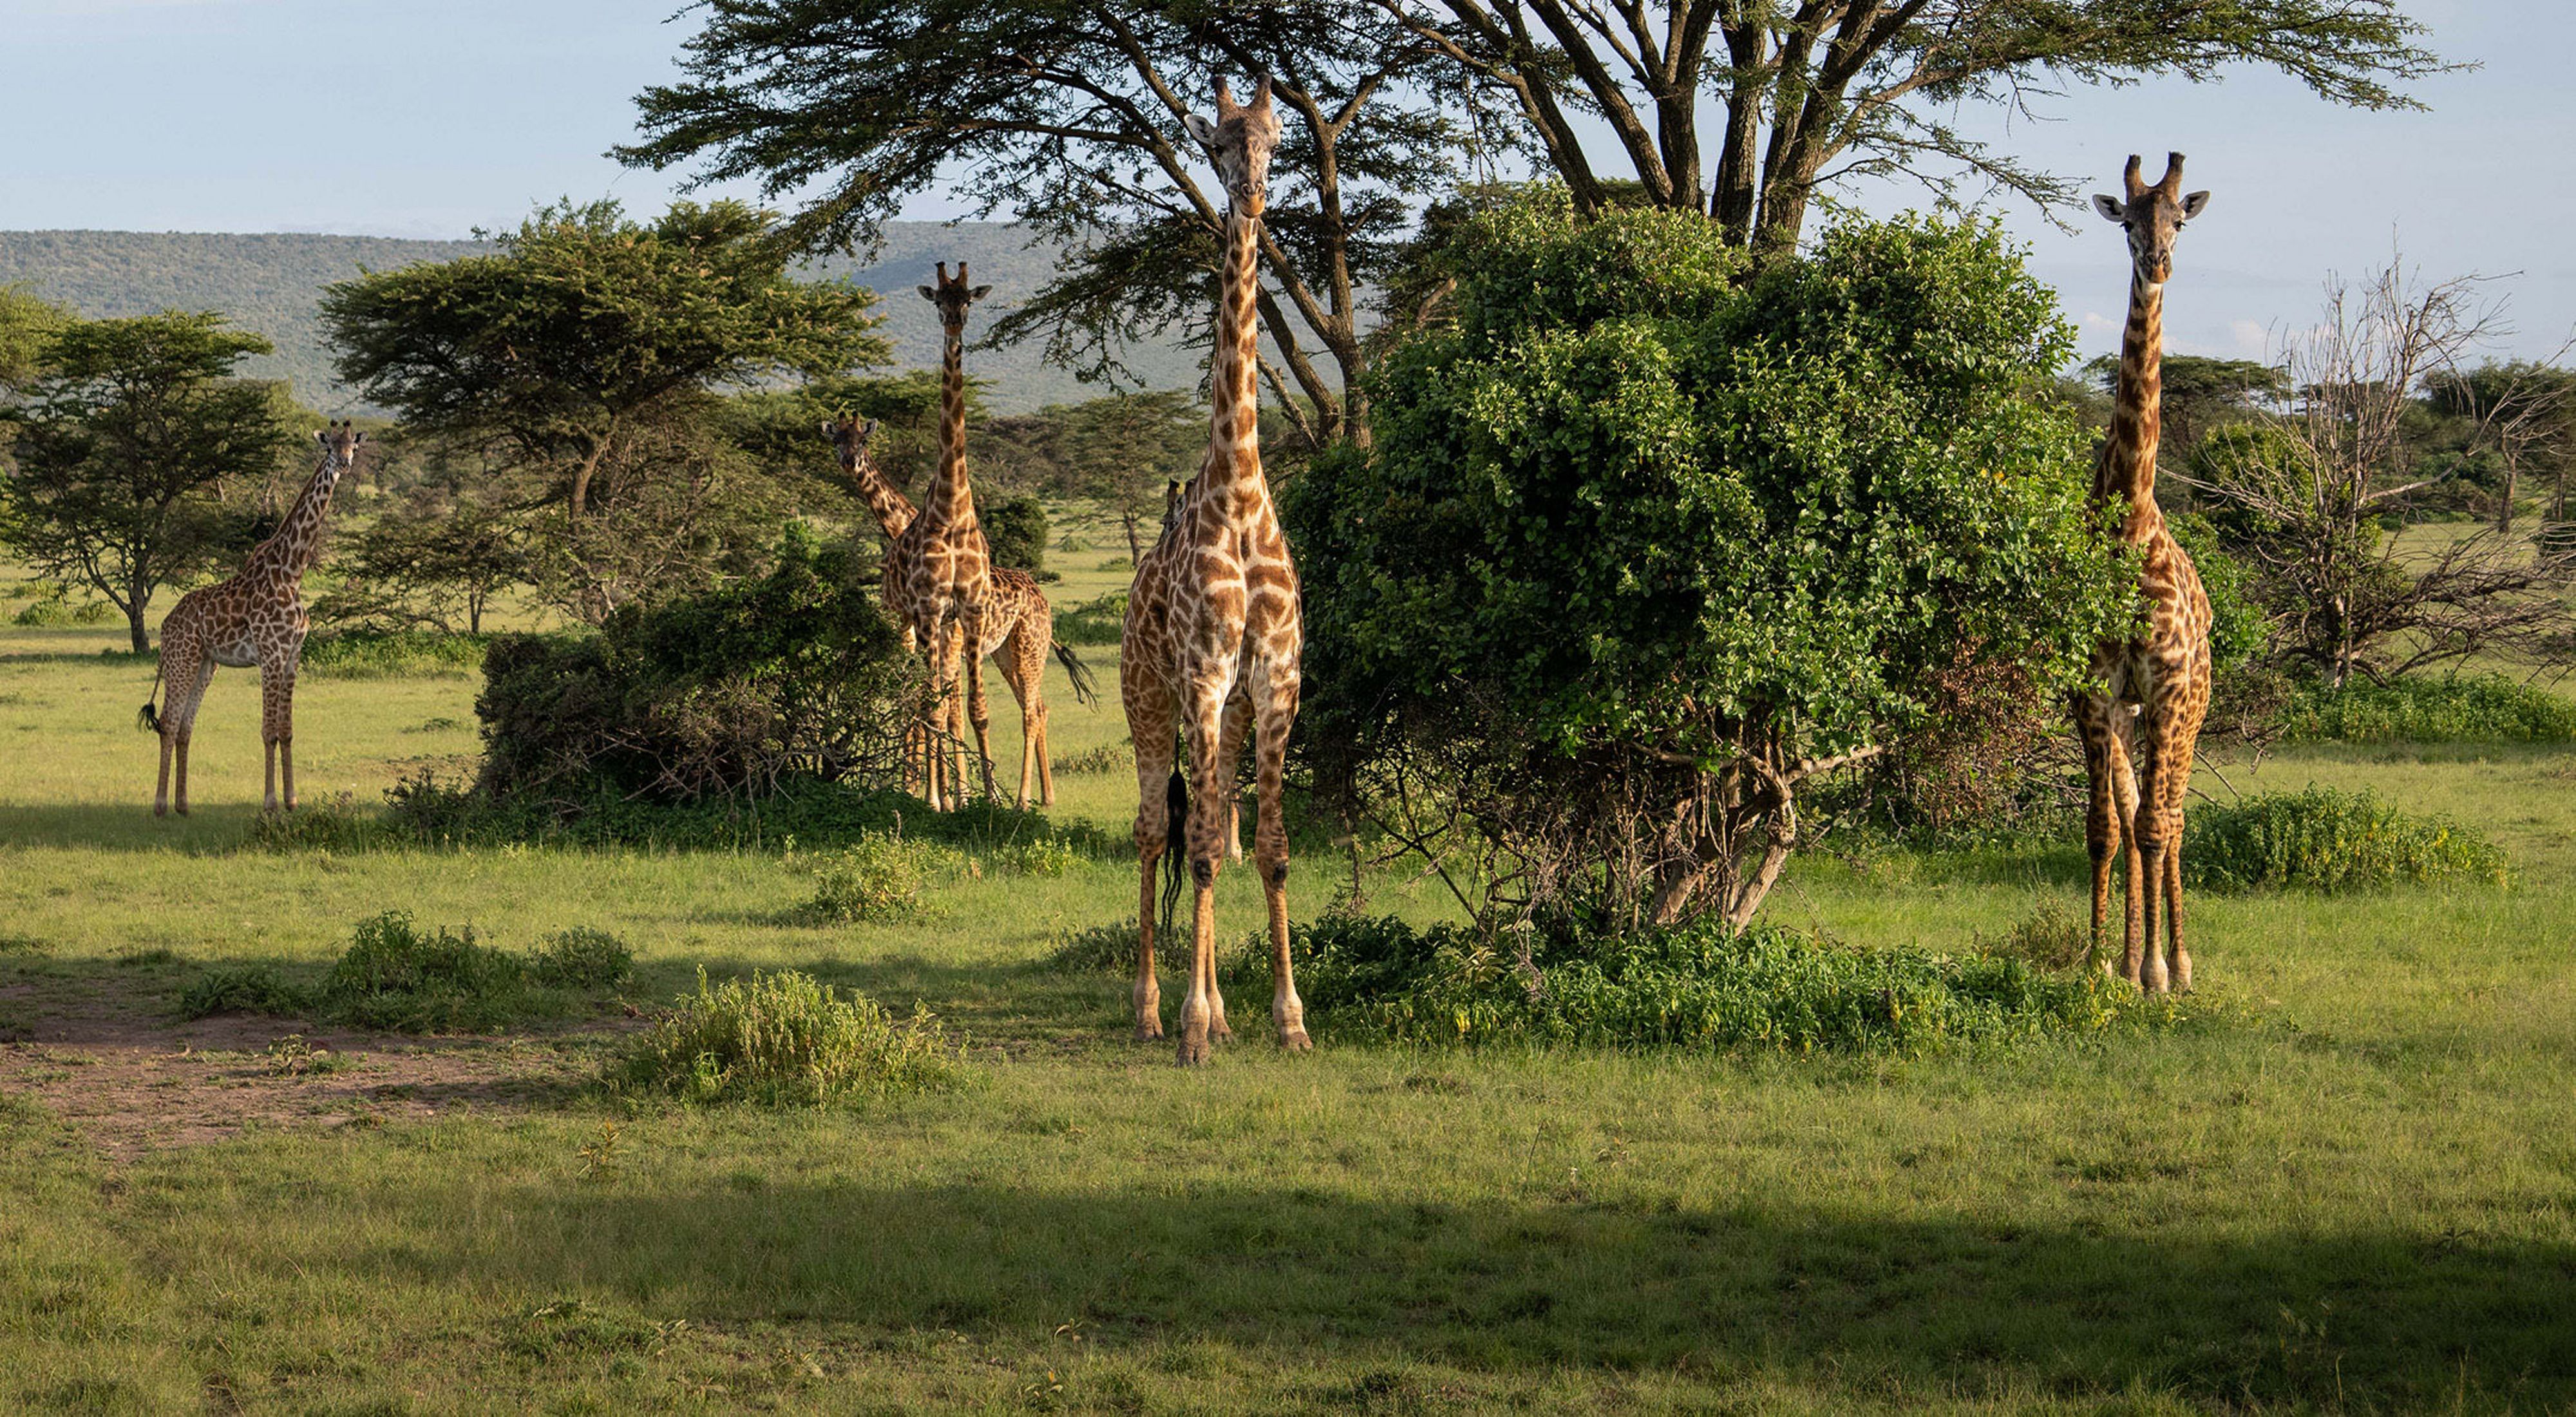 Giraffes roam Kenya's Pardamat Conservation Area.